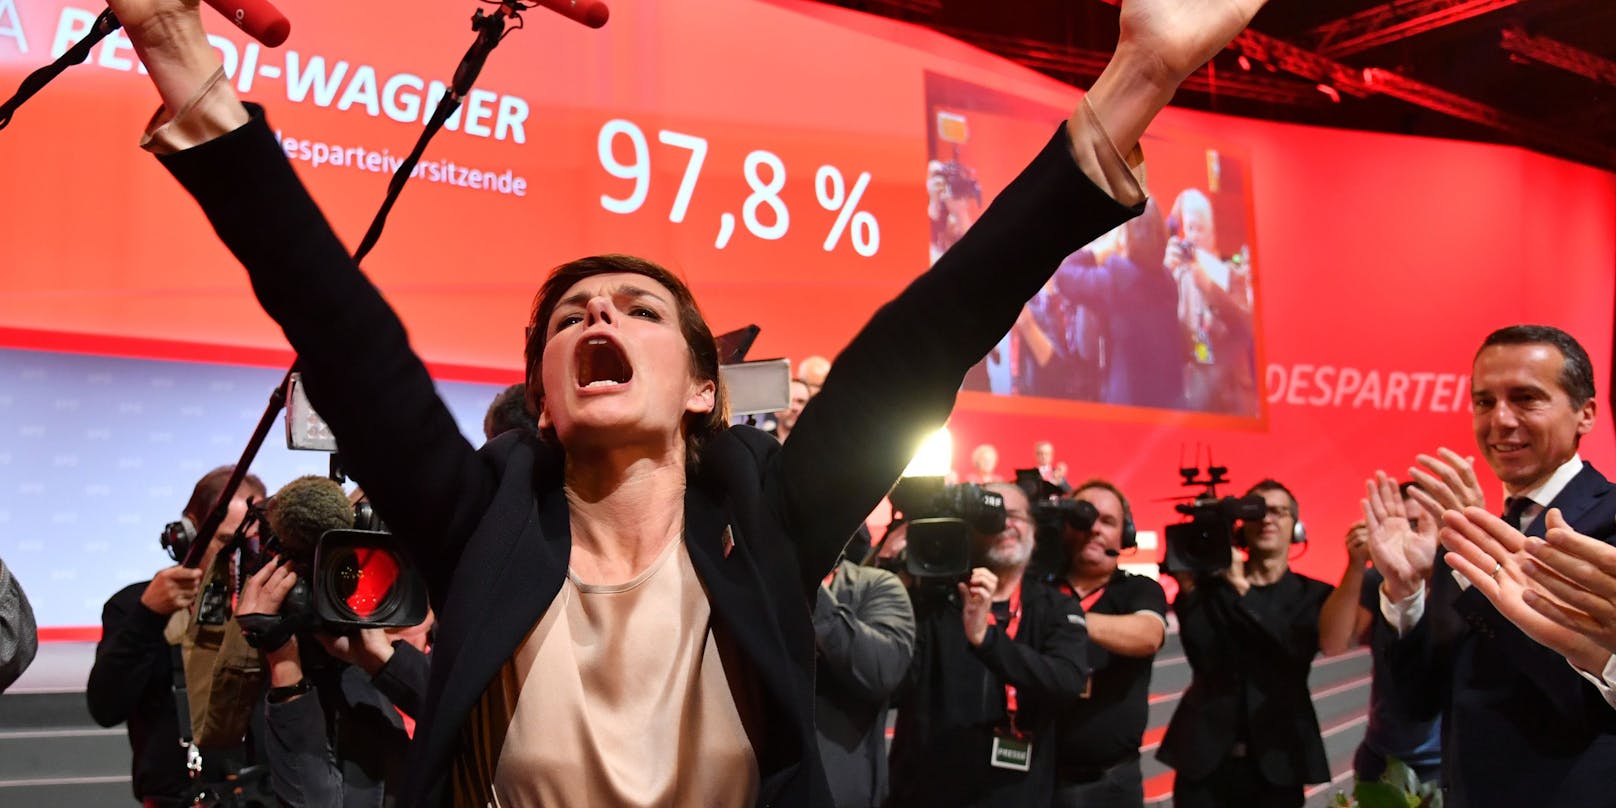 Am Parteitag 2018 wählten 97,8 Prozent Rendi.